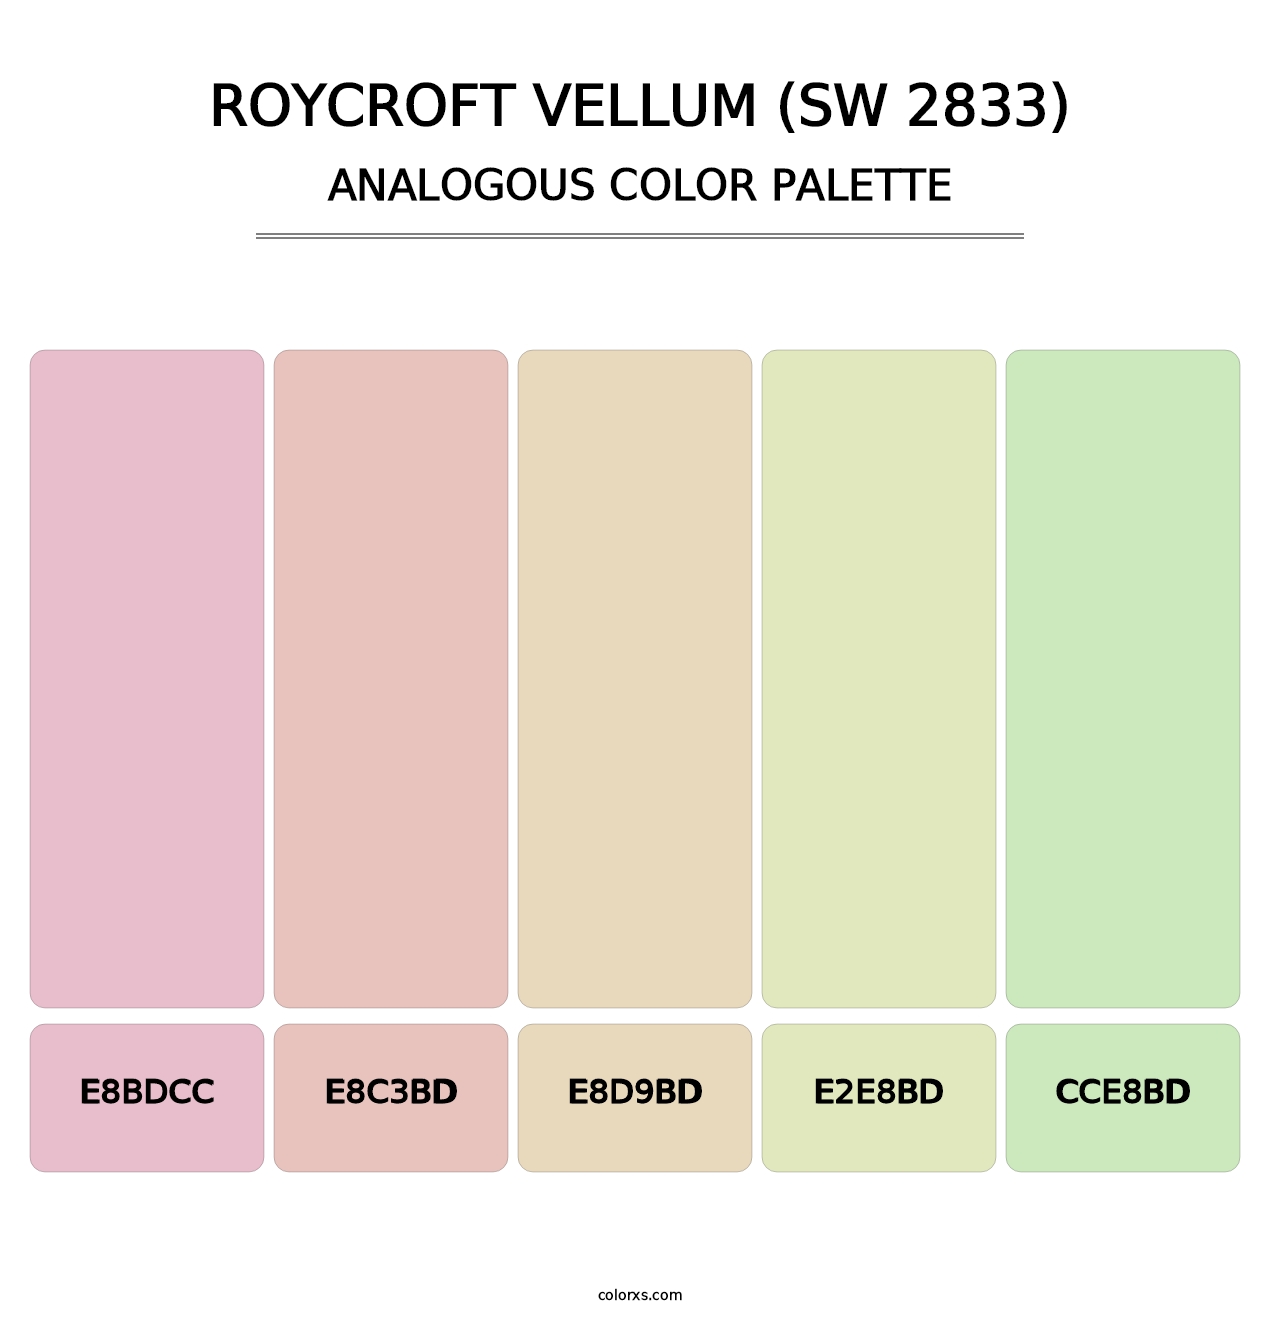 Roycroft Vellum (SW 2833) - Analogous Color Palette